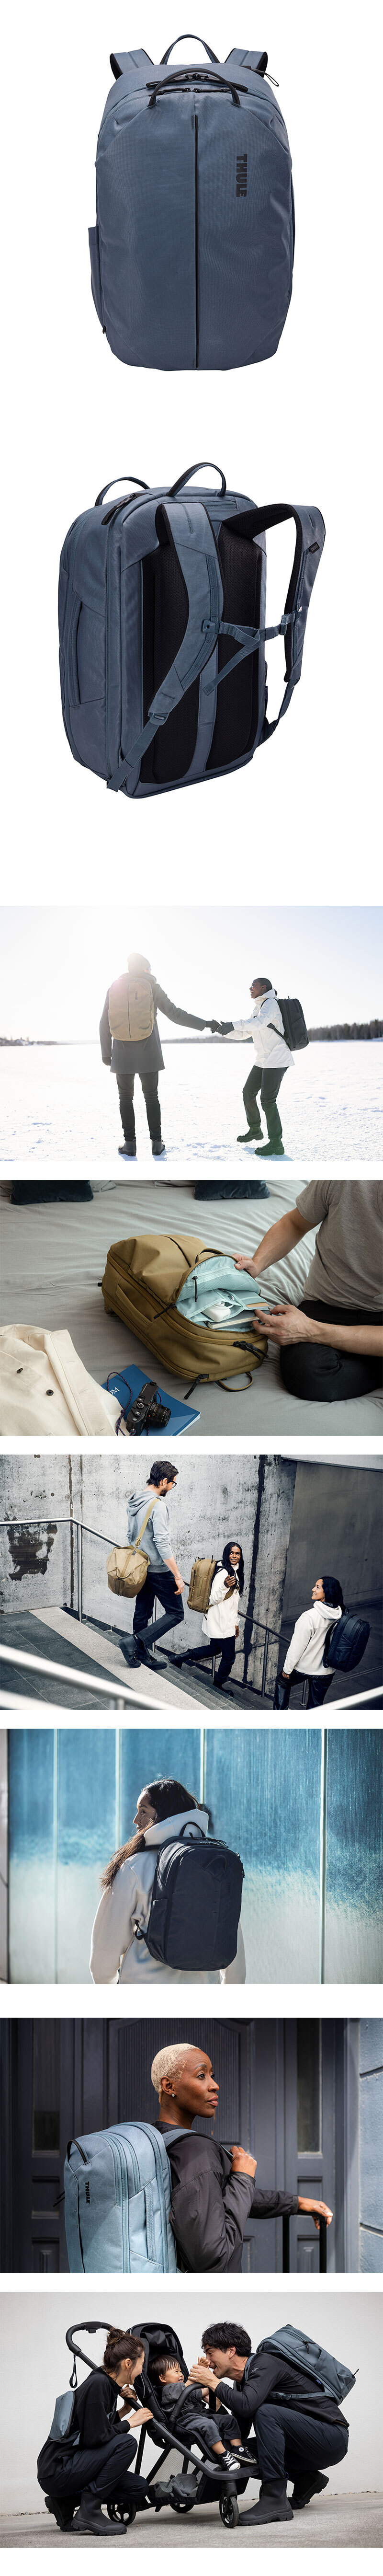 Aion-Backpack-40-4.jpg